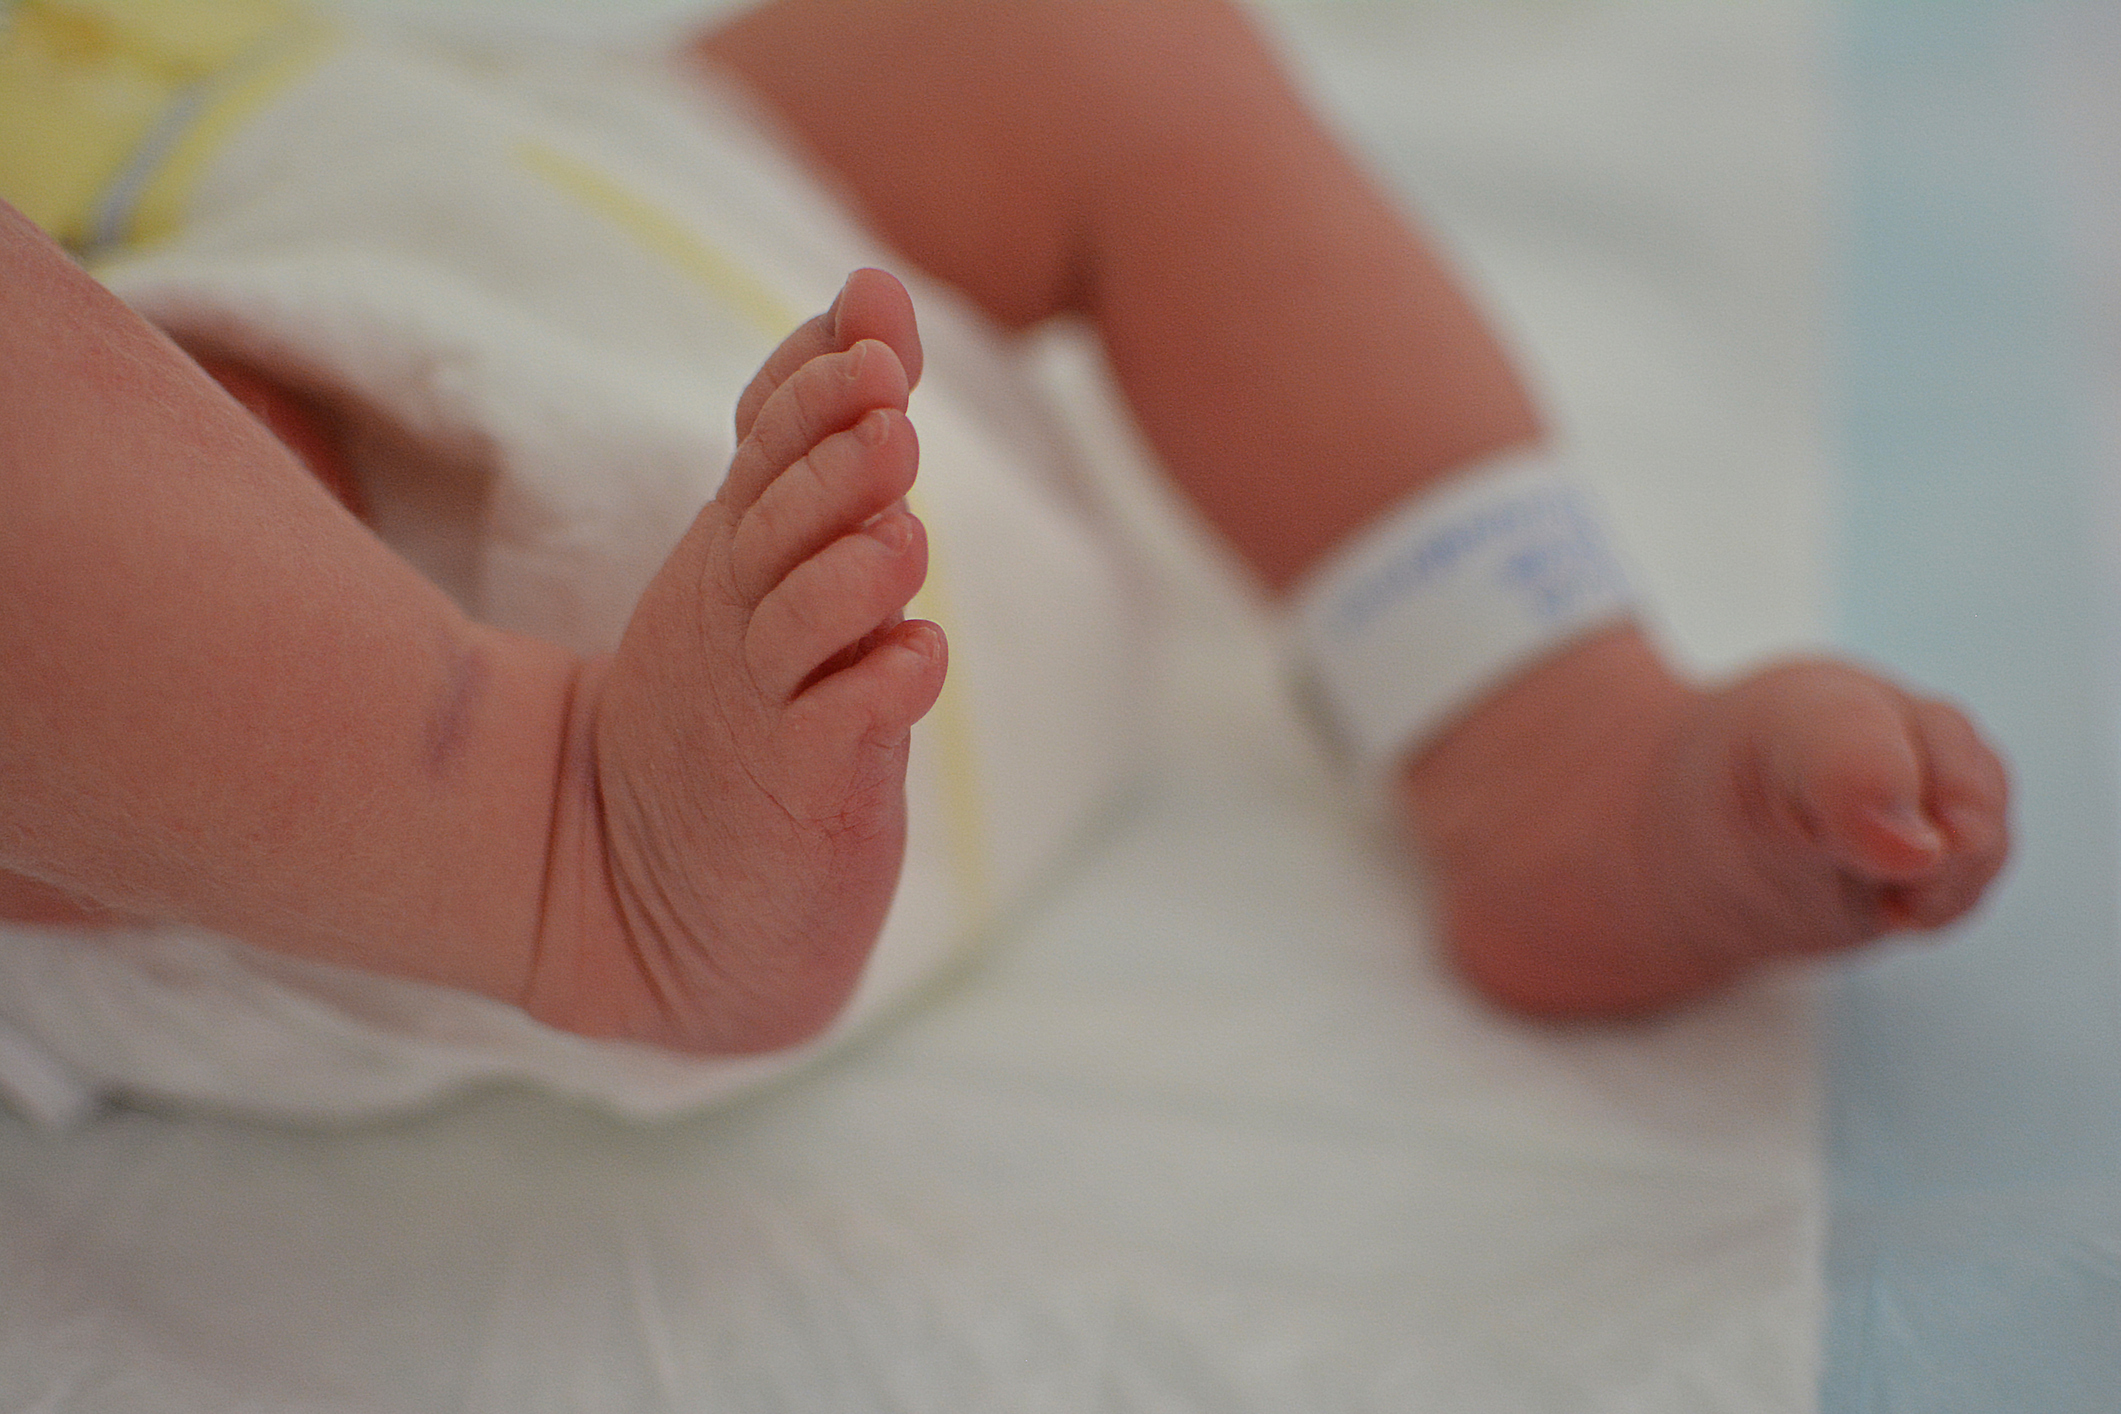 El permiso  por nacimiento y cuidado de menor será de 16 semanas para ambos progenitores a partir de enero